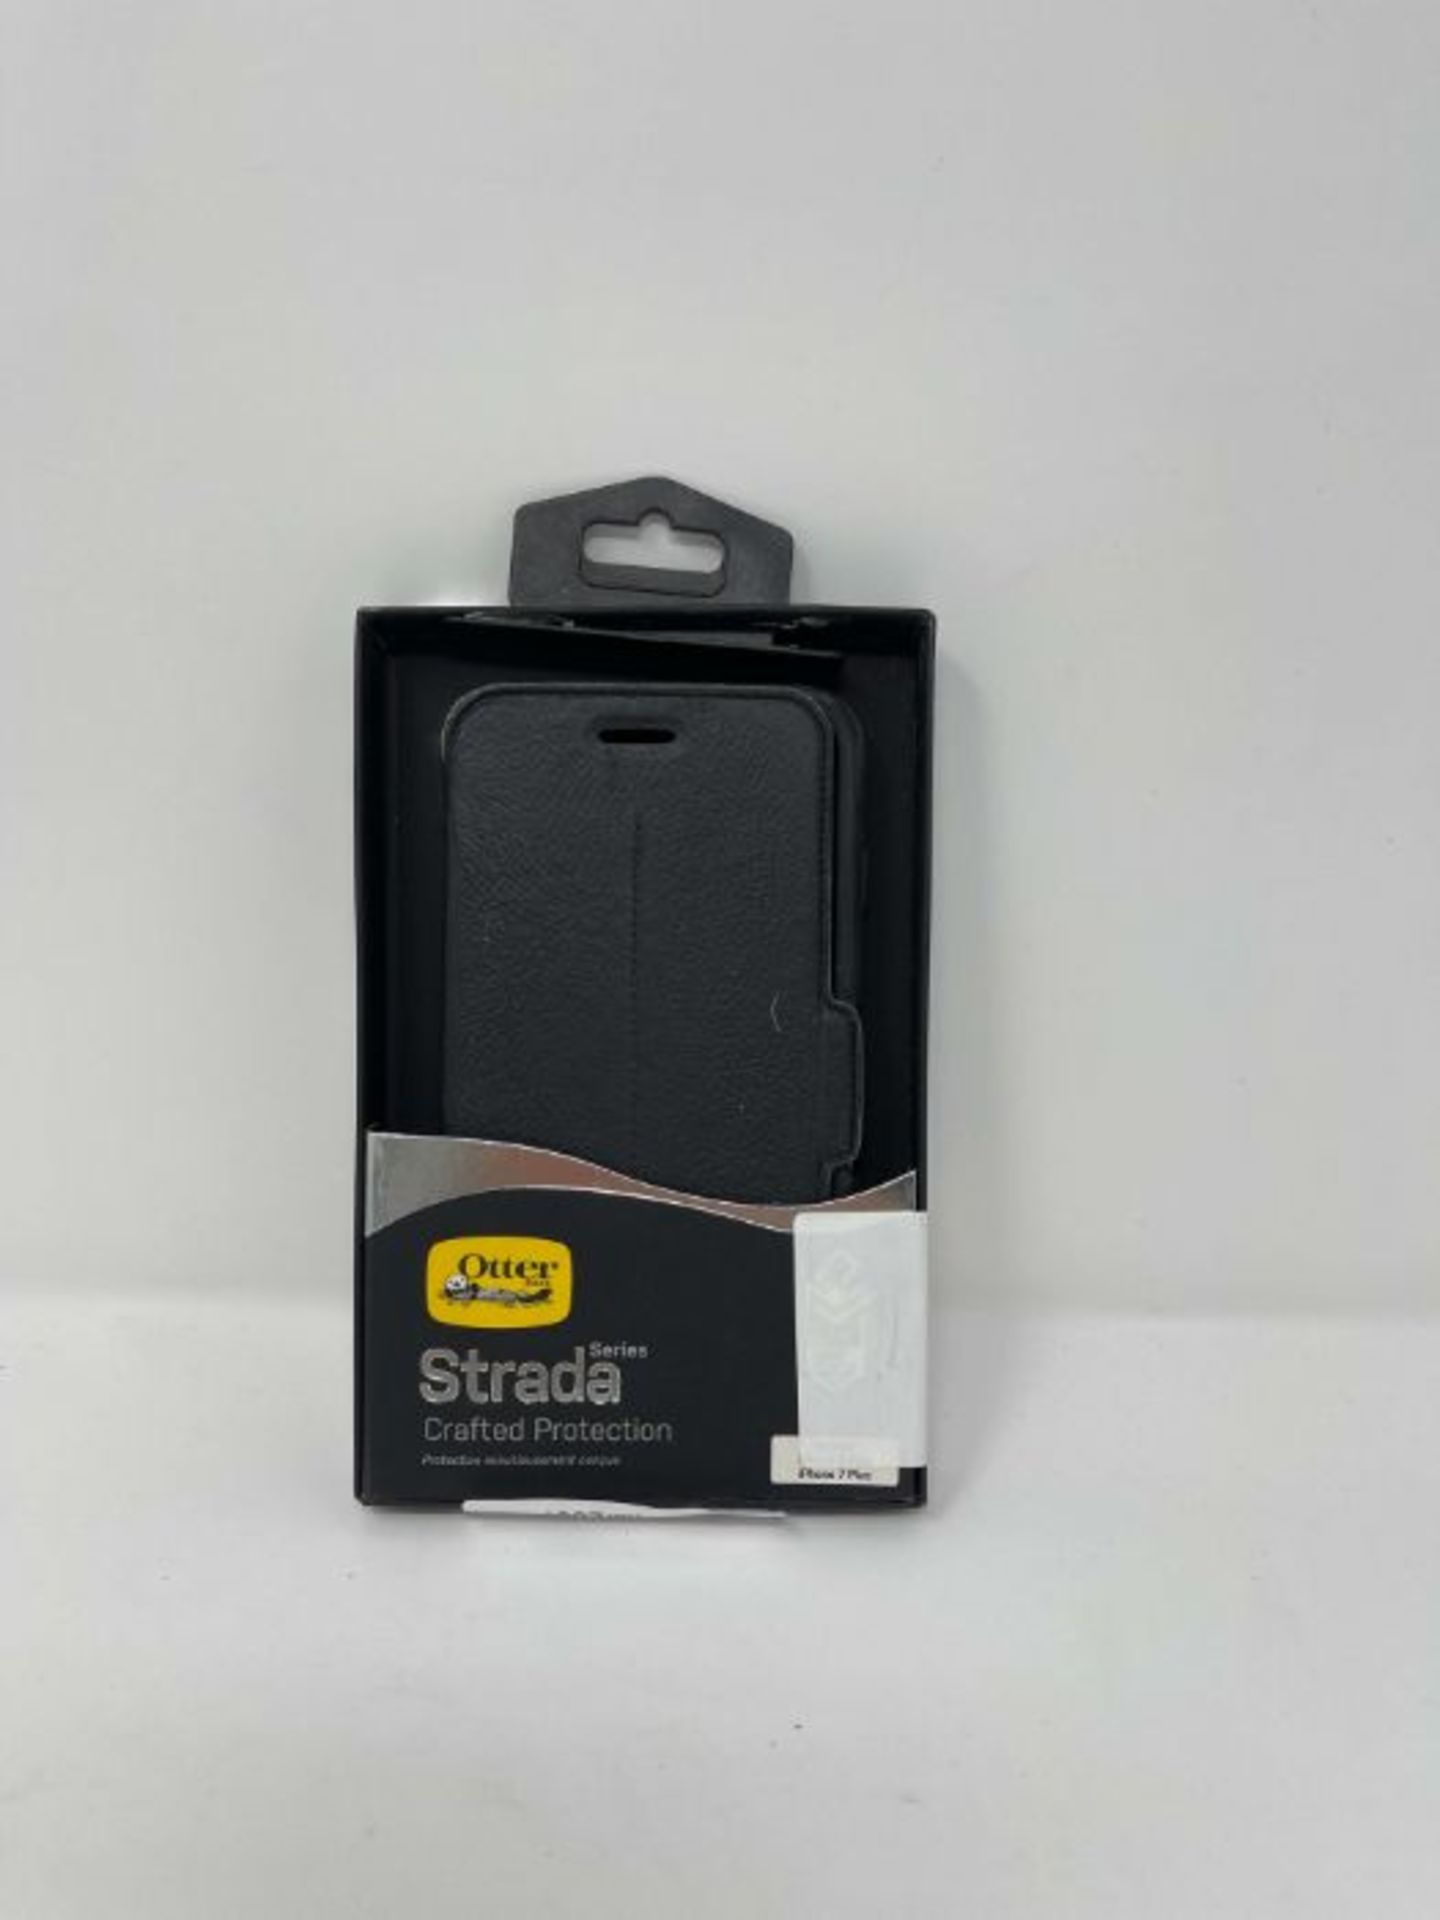 OtterBox Strada Series Premium Leather Folio Case for iPhone 7 Plus/8 Plus - Black - Image 2 of 2